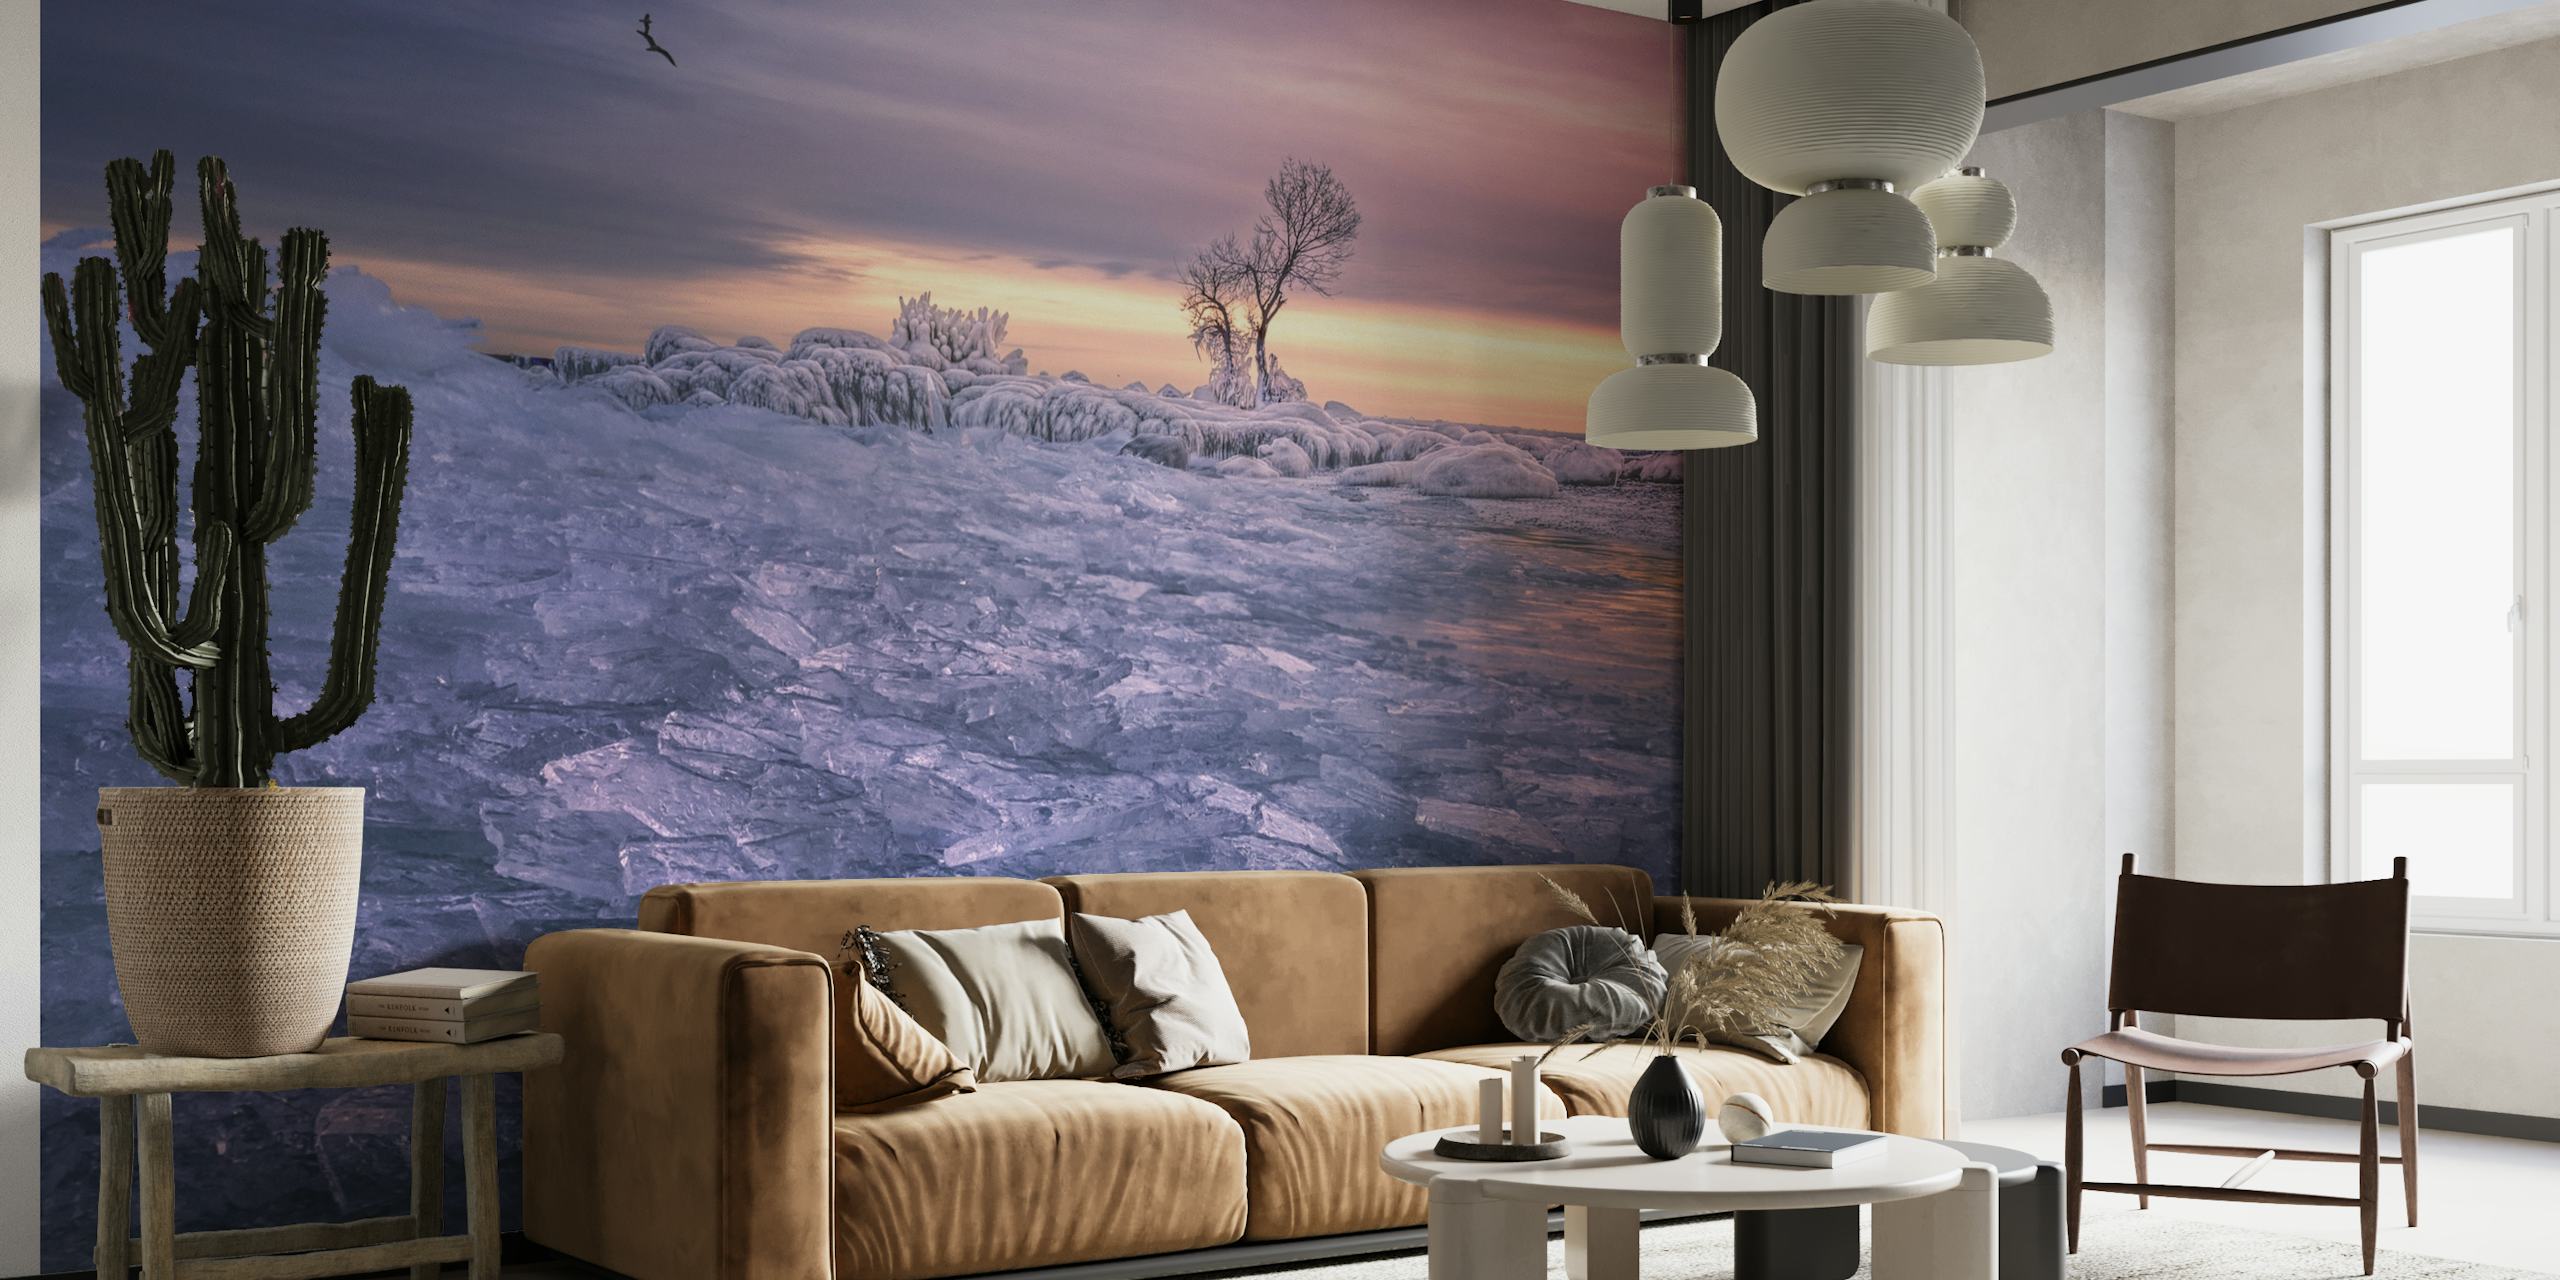 Un murale murale con una serena scena invernale con un albero solitario e sfumature crepuscolari su un paesaggio ghiacciato.